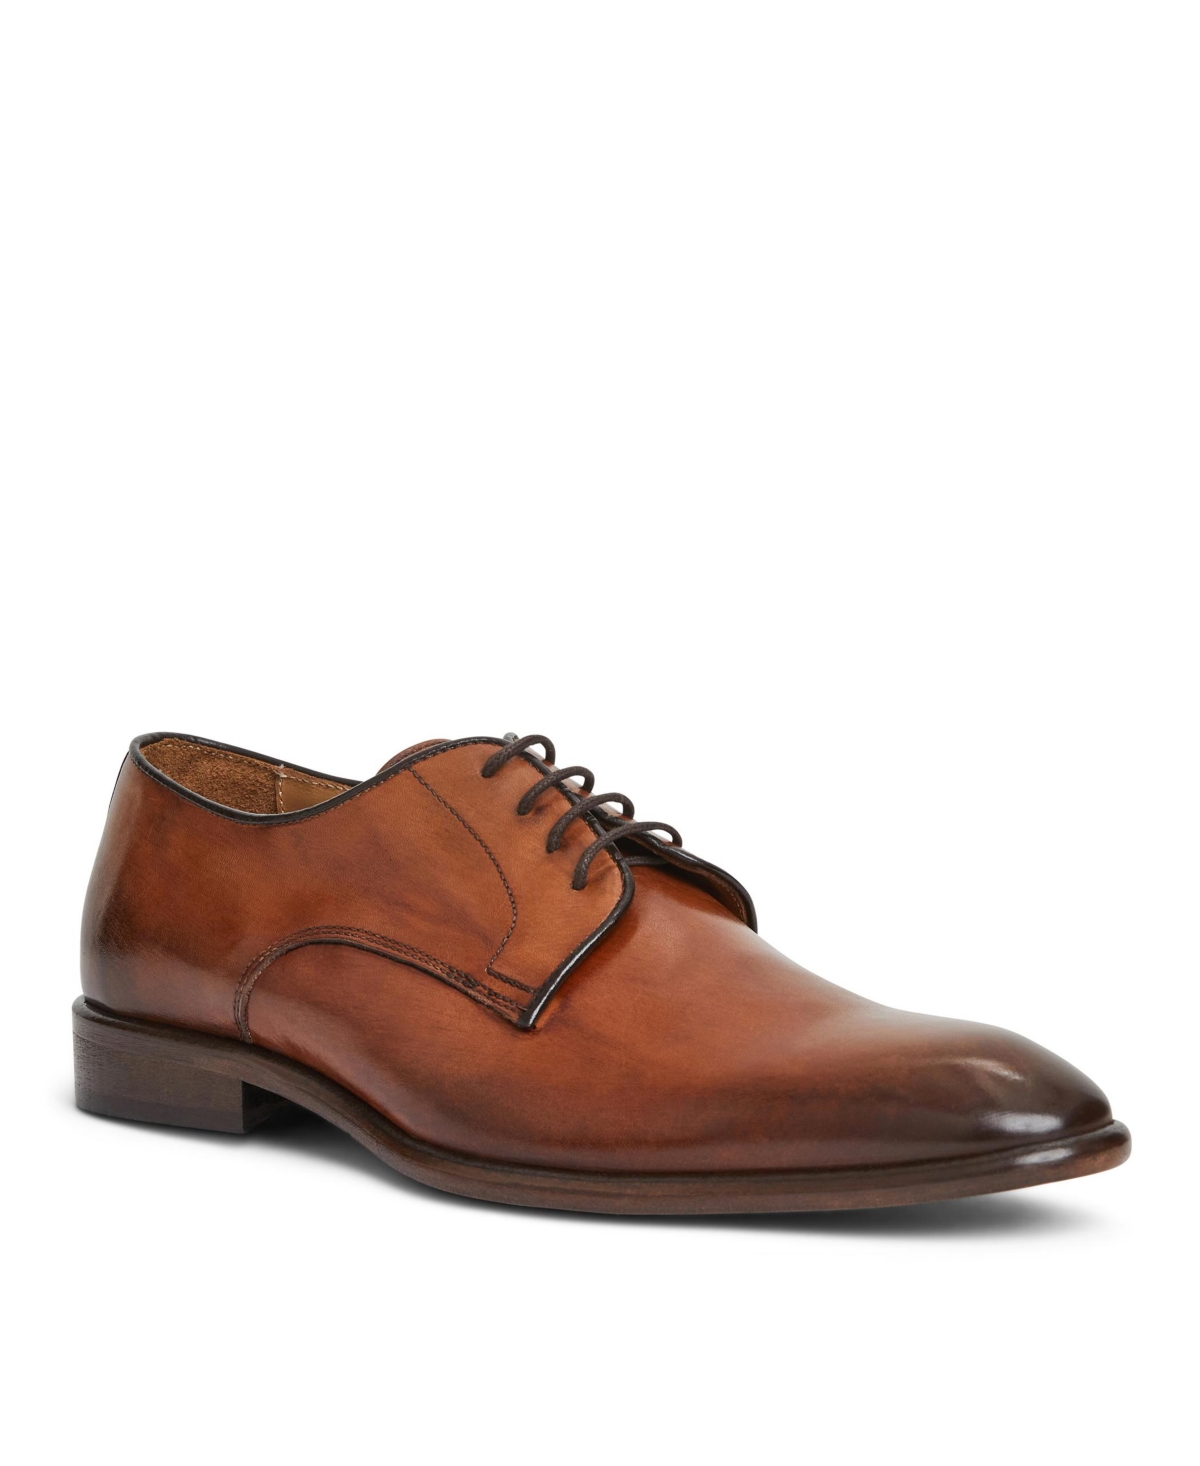 Men's Salerno Leather Oxford Dress Shoes - Cognac